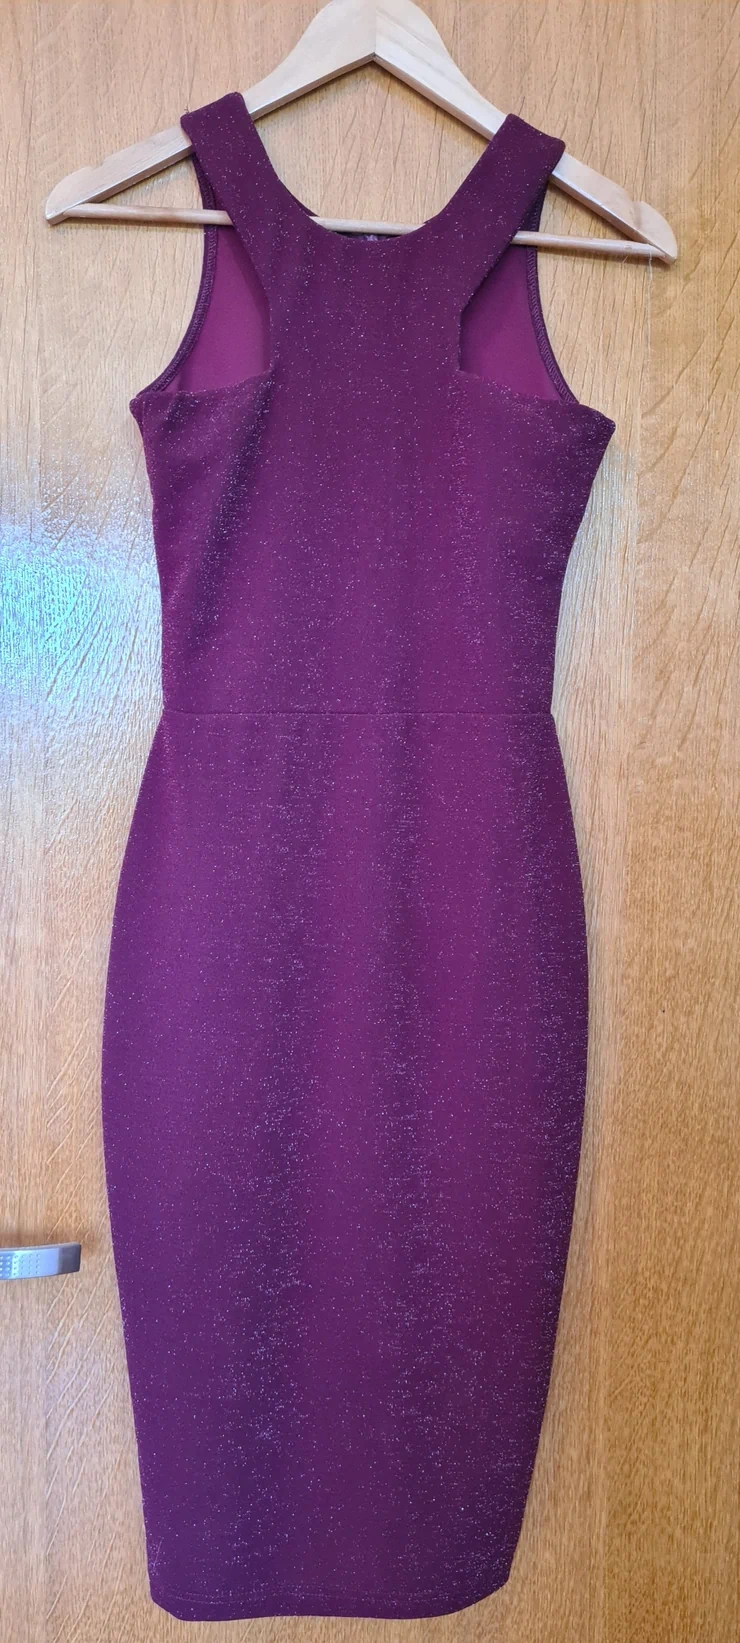 S (EU 36), M (EU 38), color - Purple, Evening, With the straps